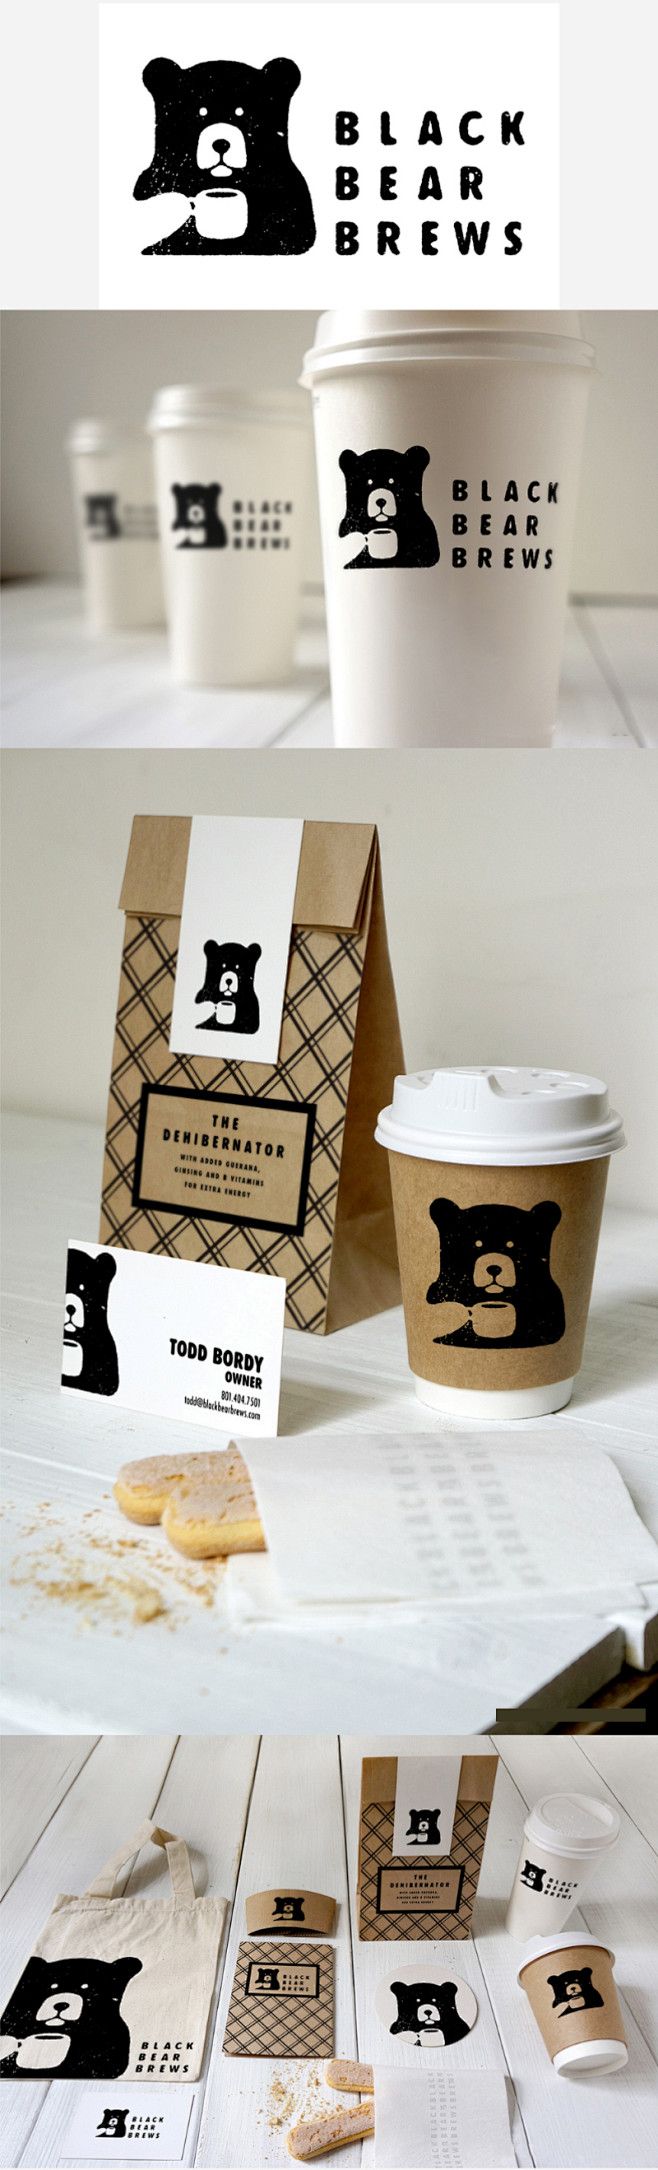 国外咖啡店logo设计-黑熊logo-咖...